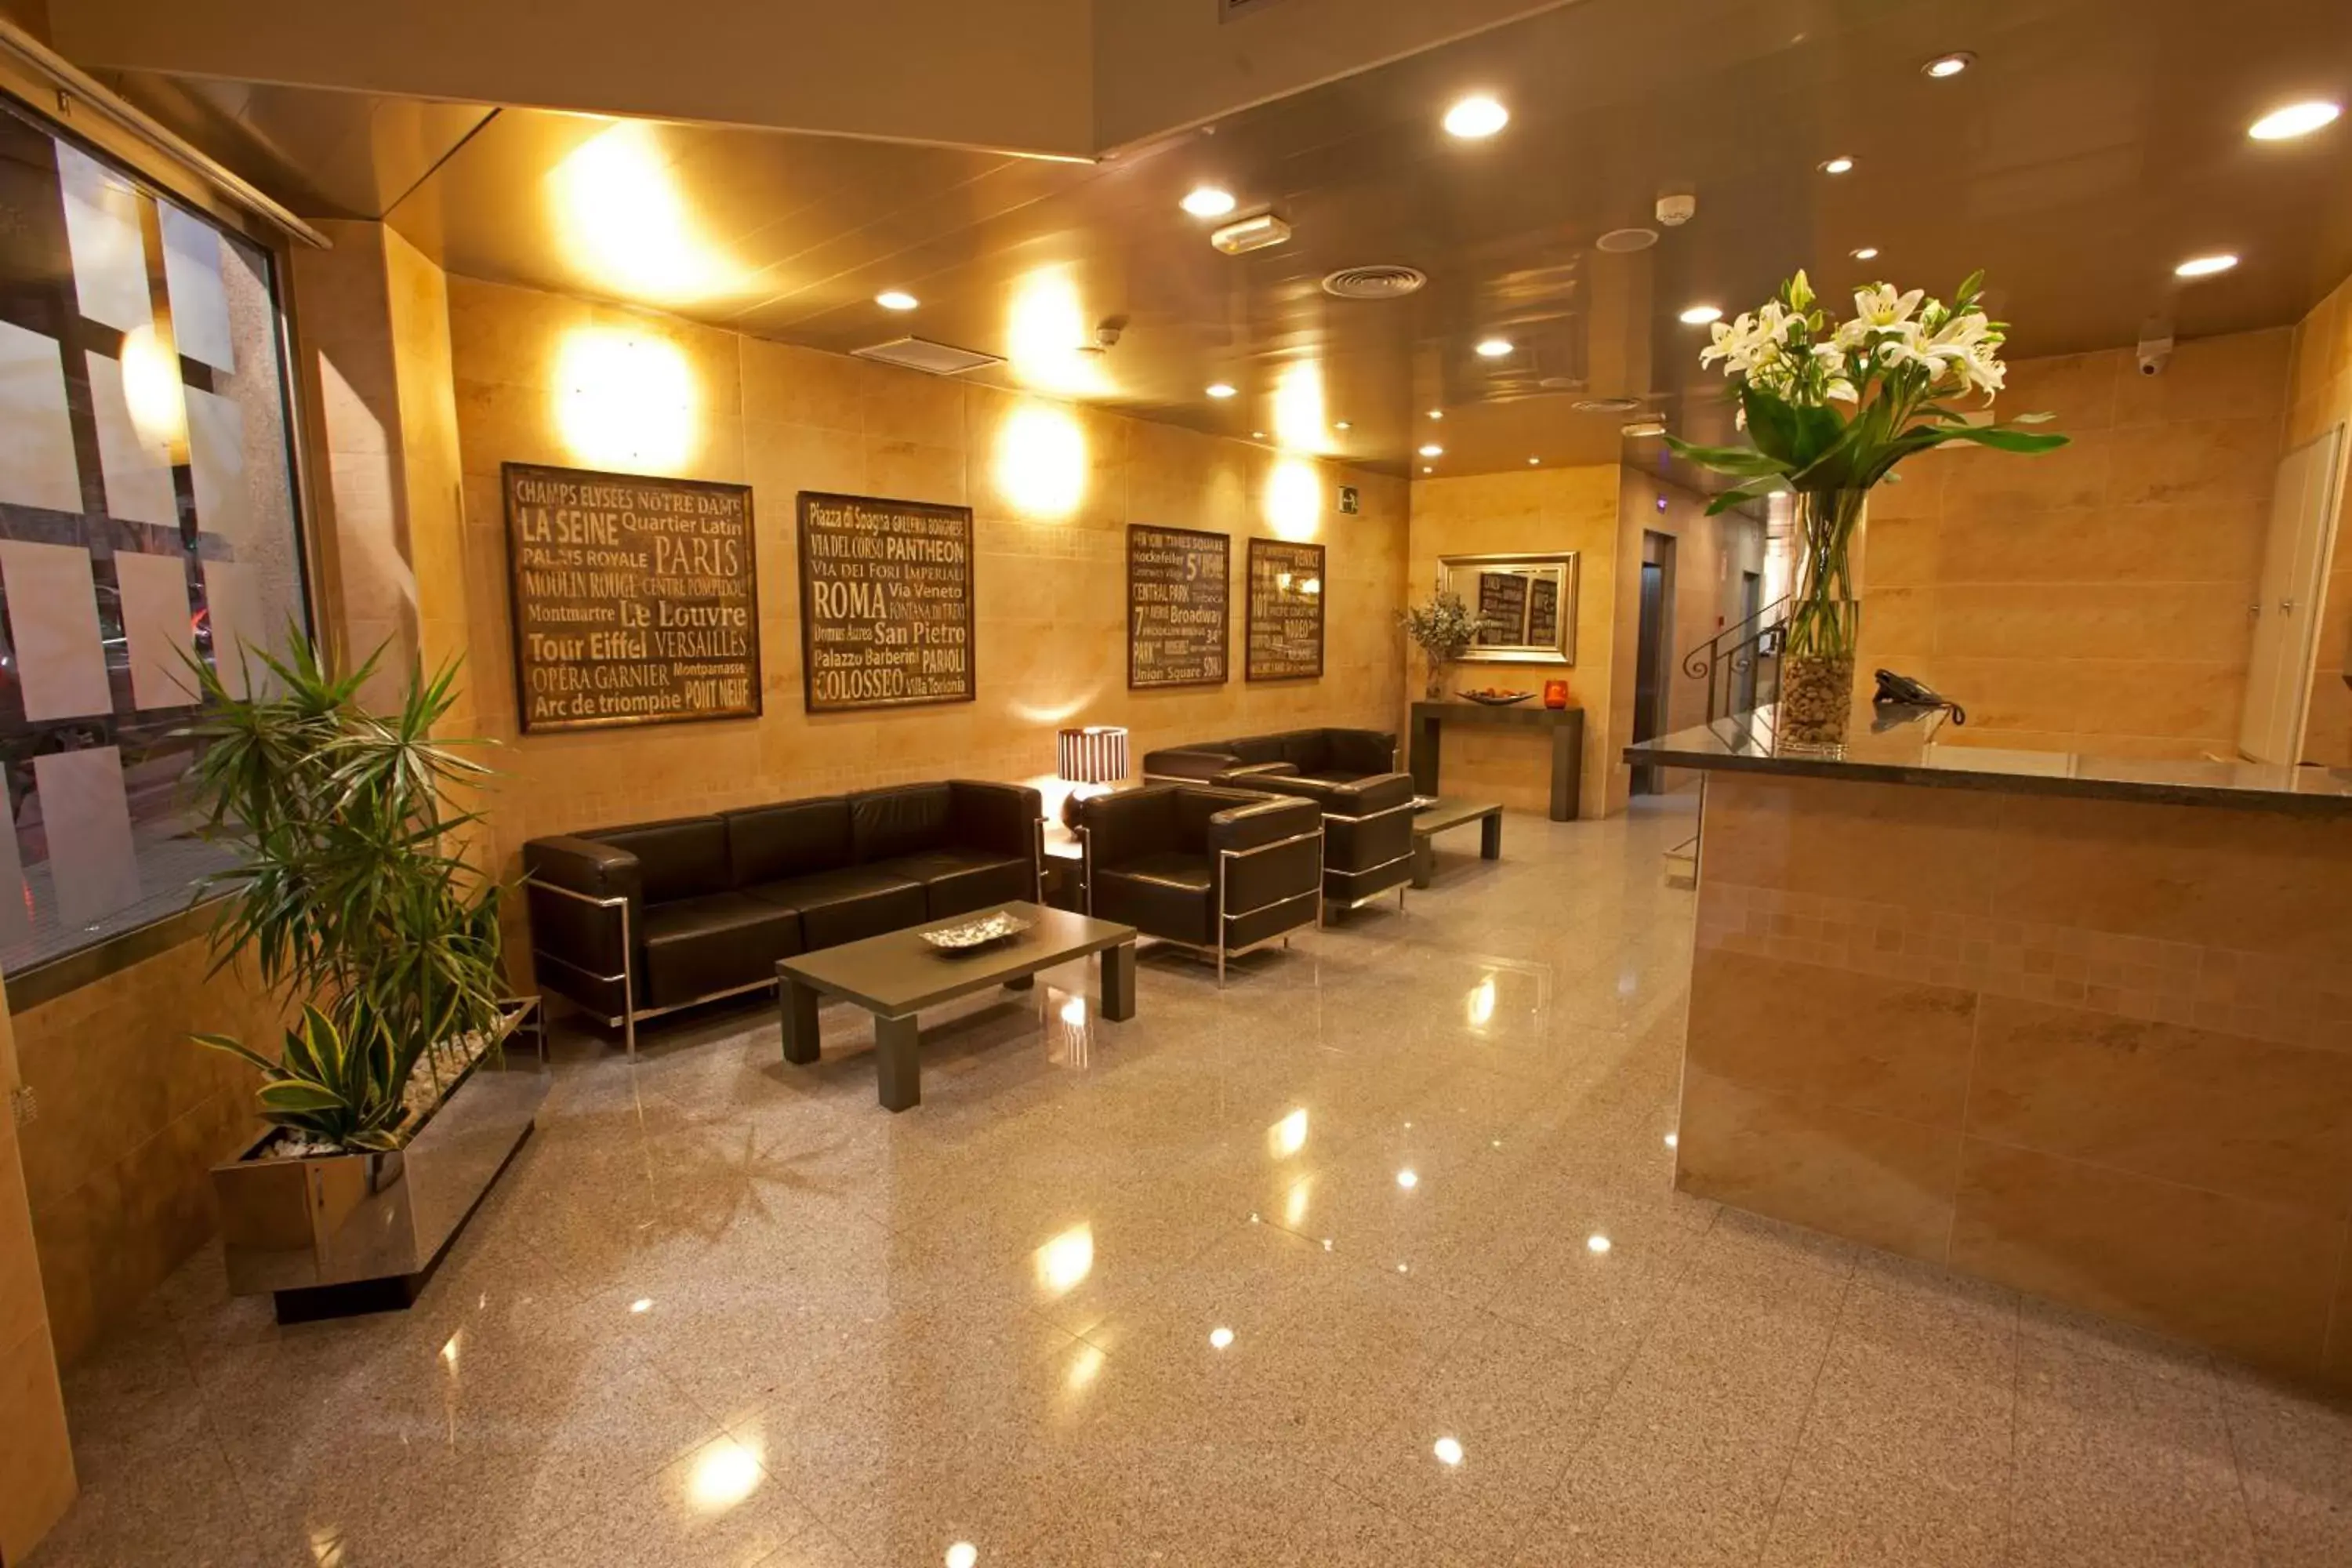 Lobby or reception in La City Estación